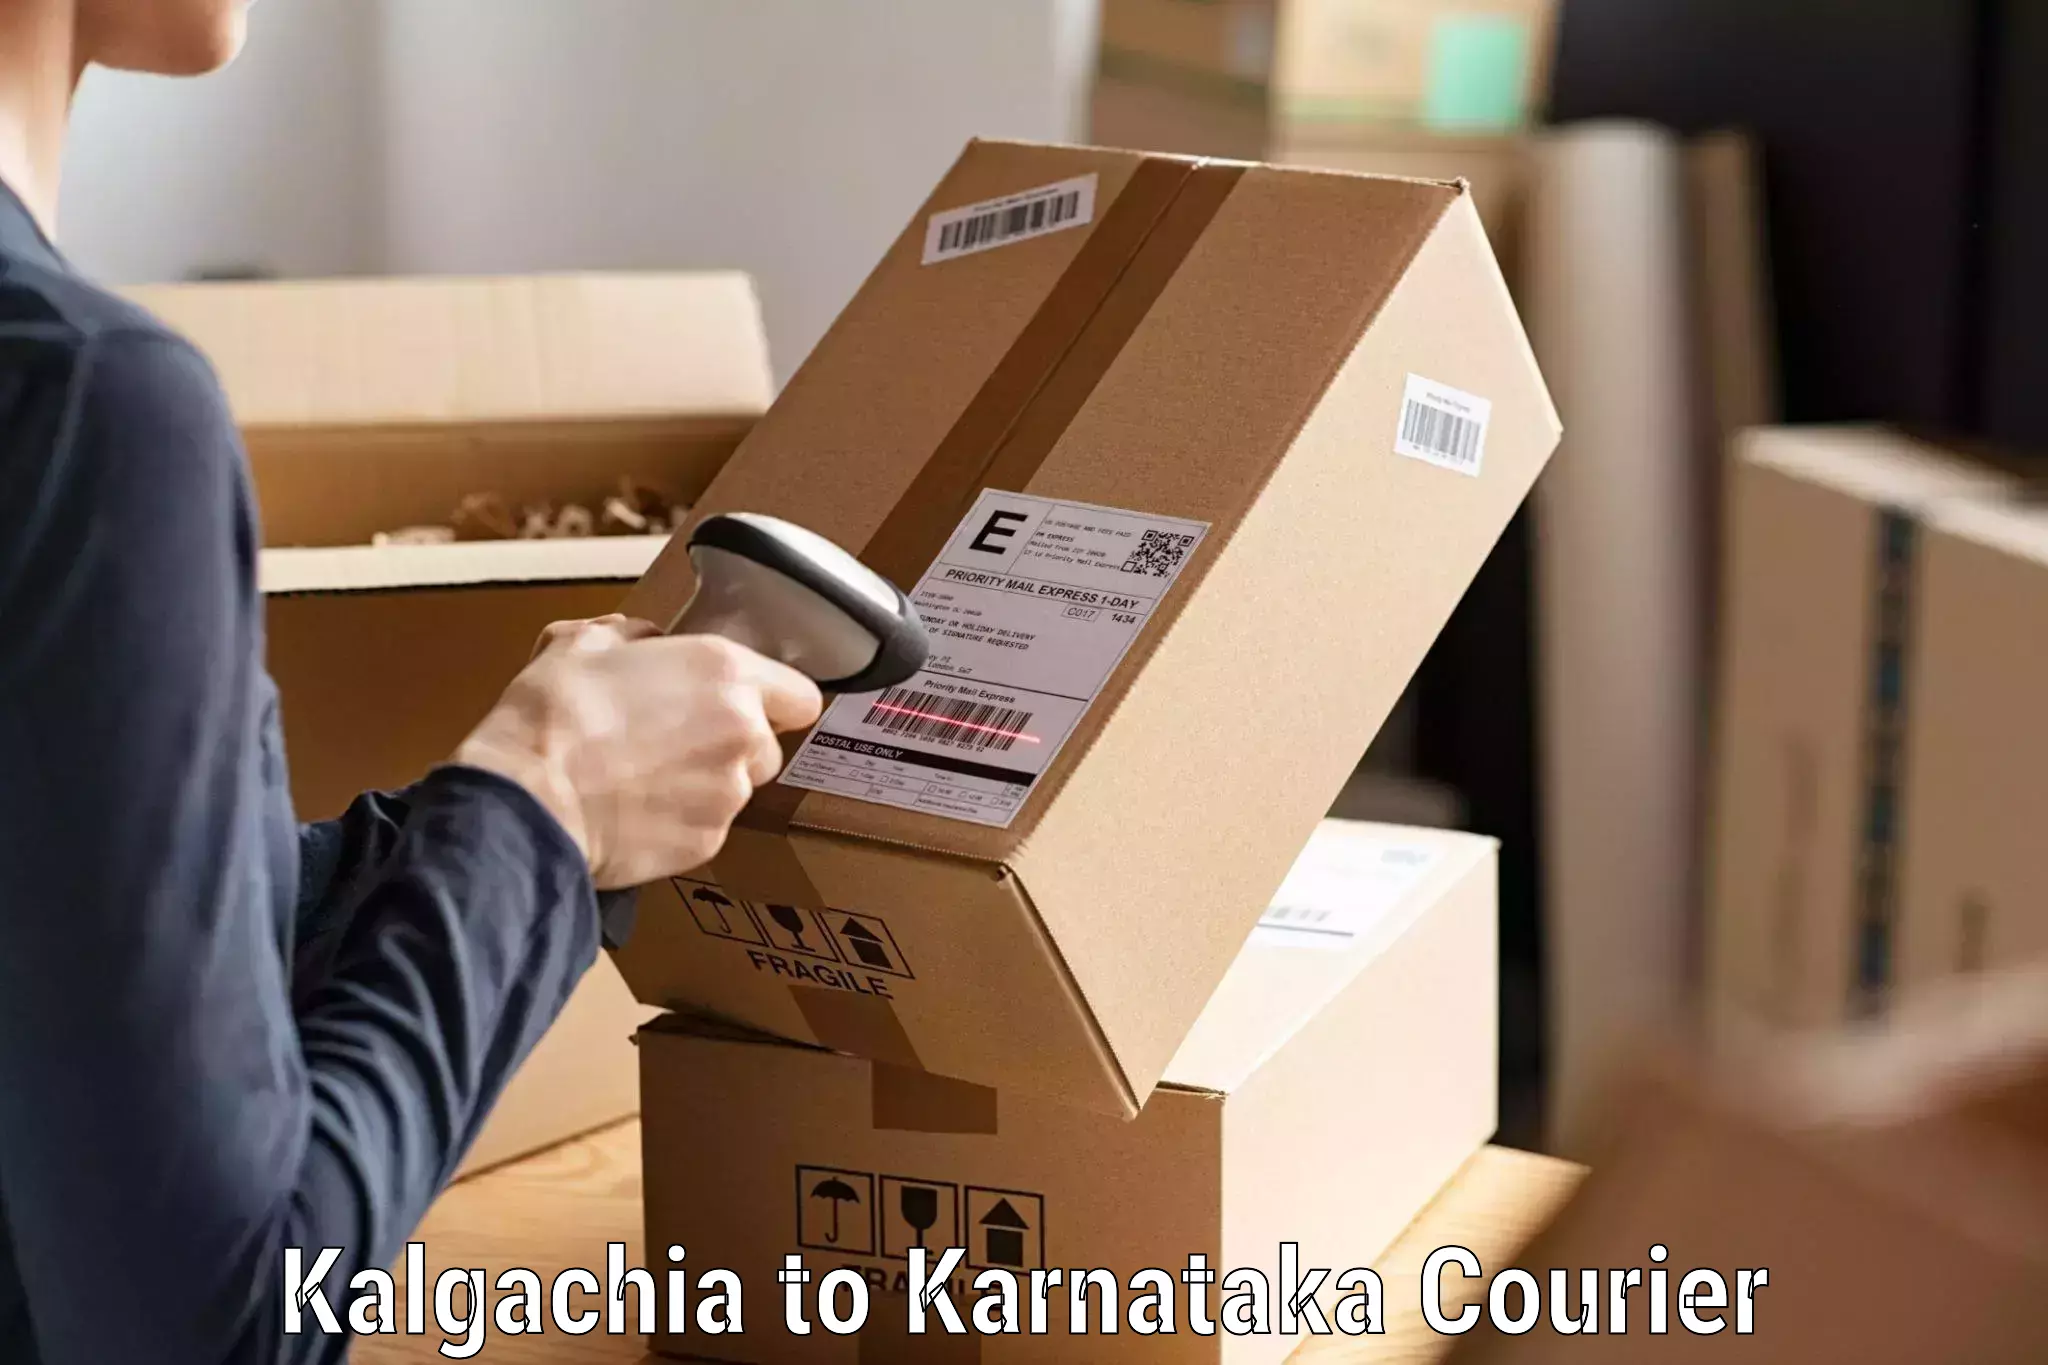 24/7 shipping services Kalgachia to Yellapur